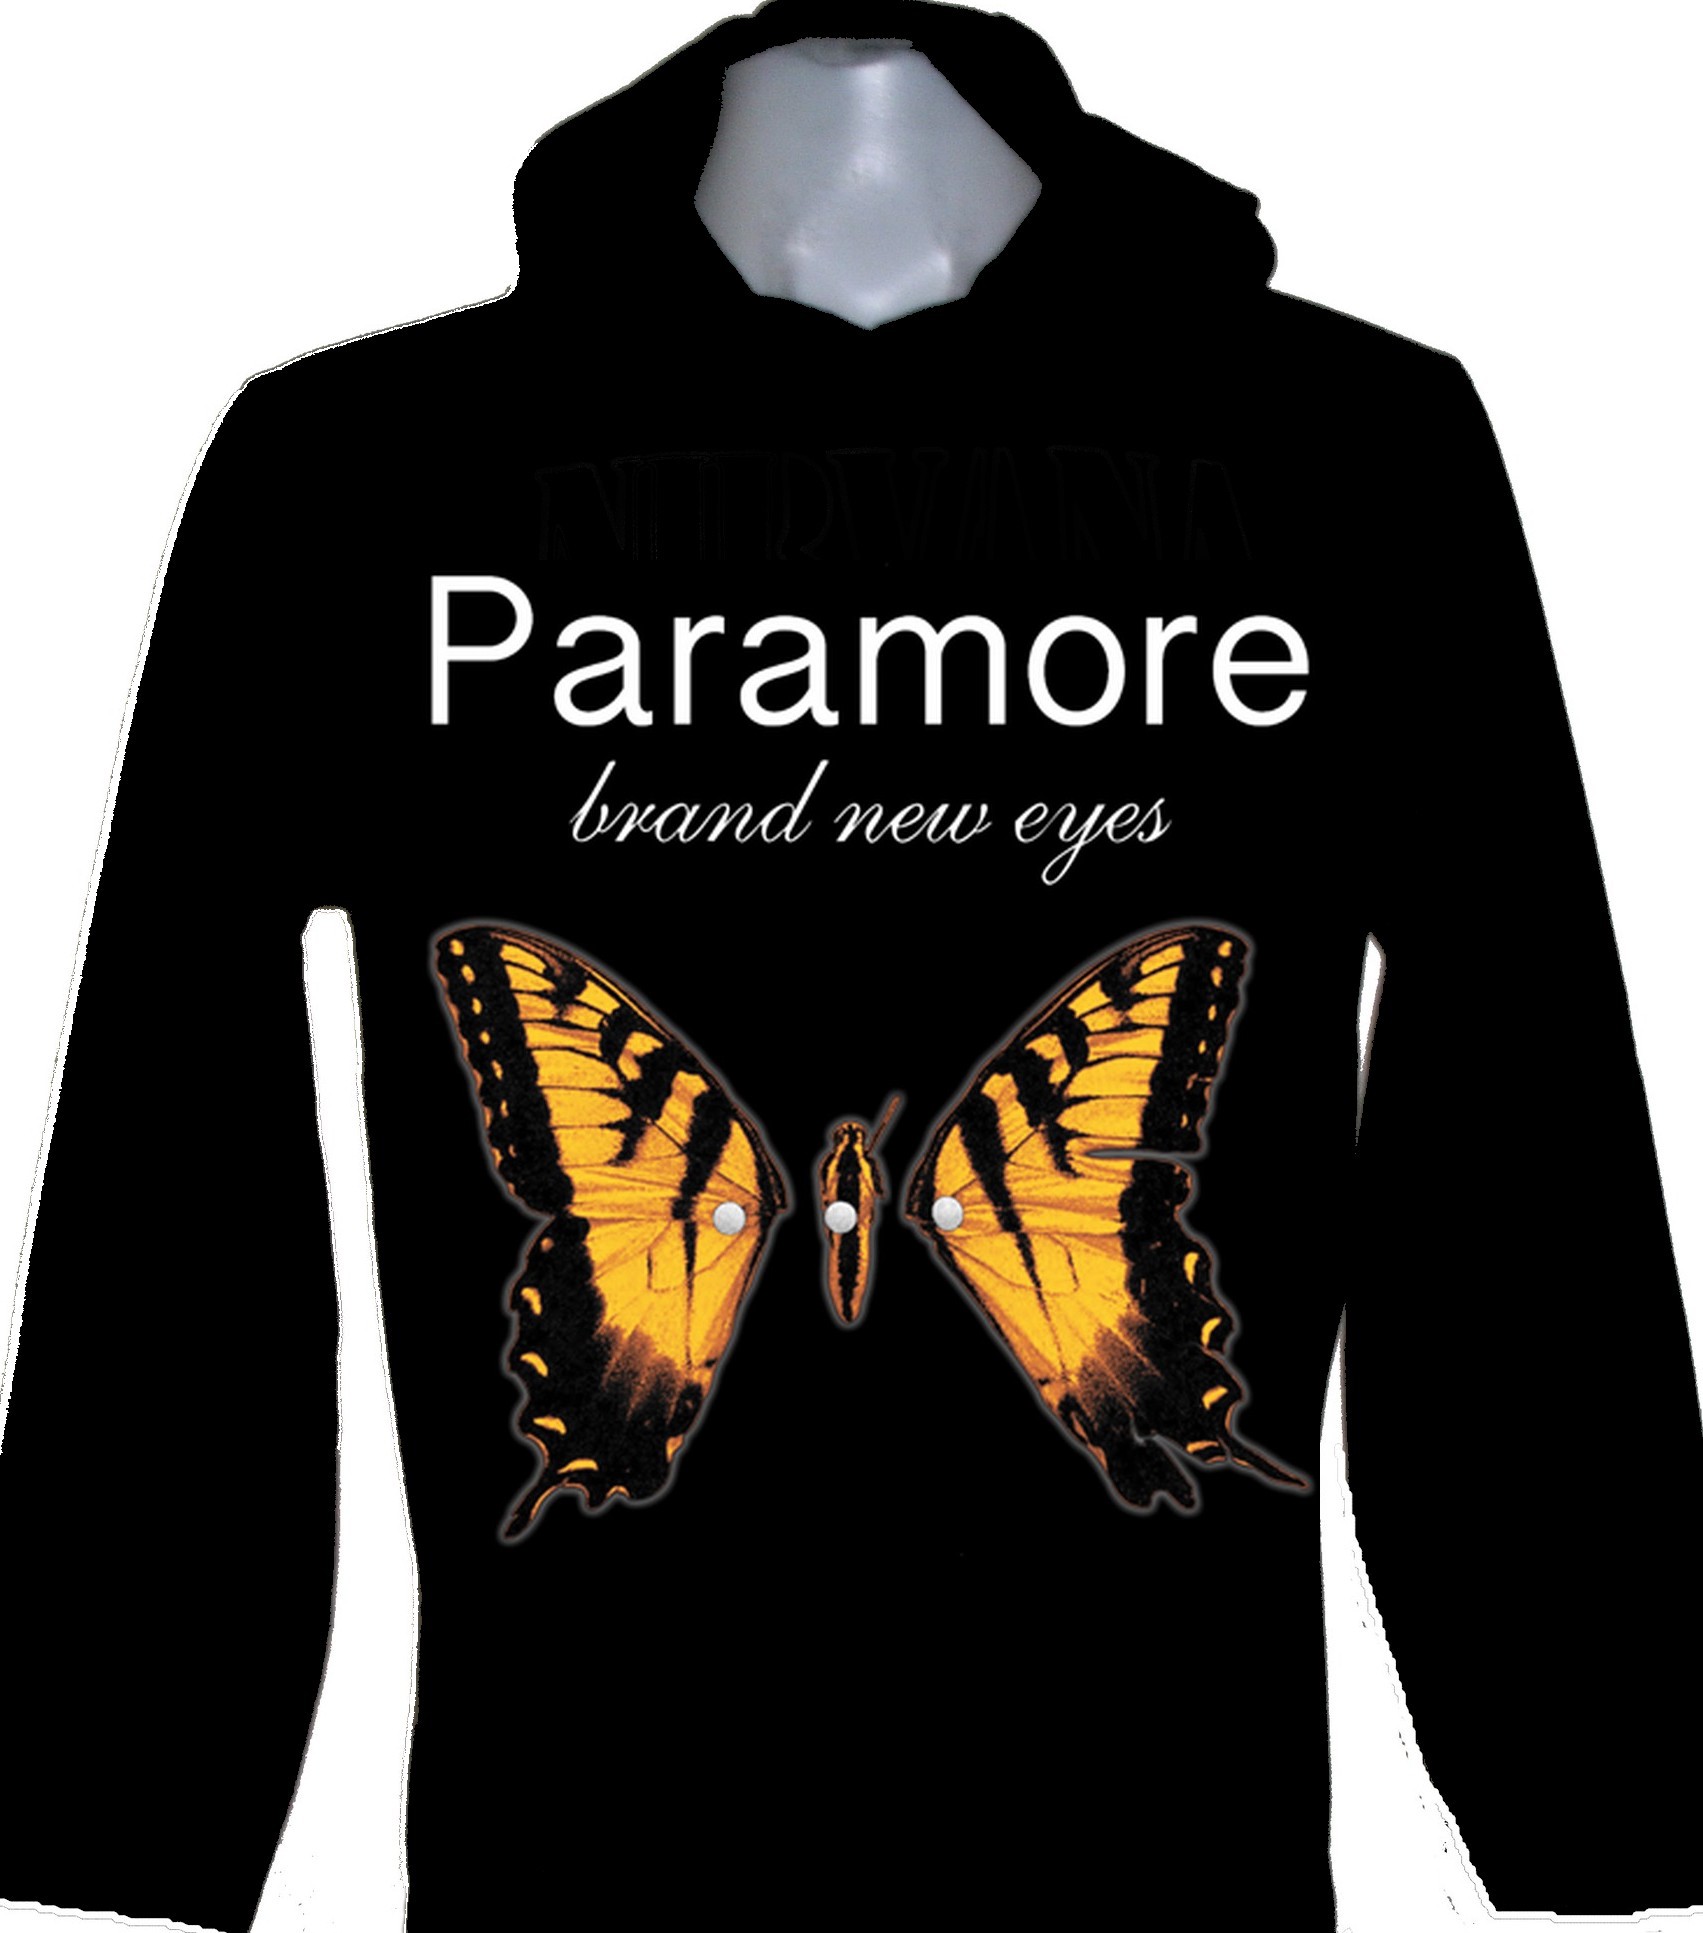 Paramore - Brand New Eyes - Band T-Shirt